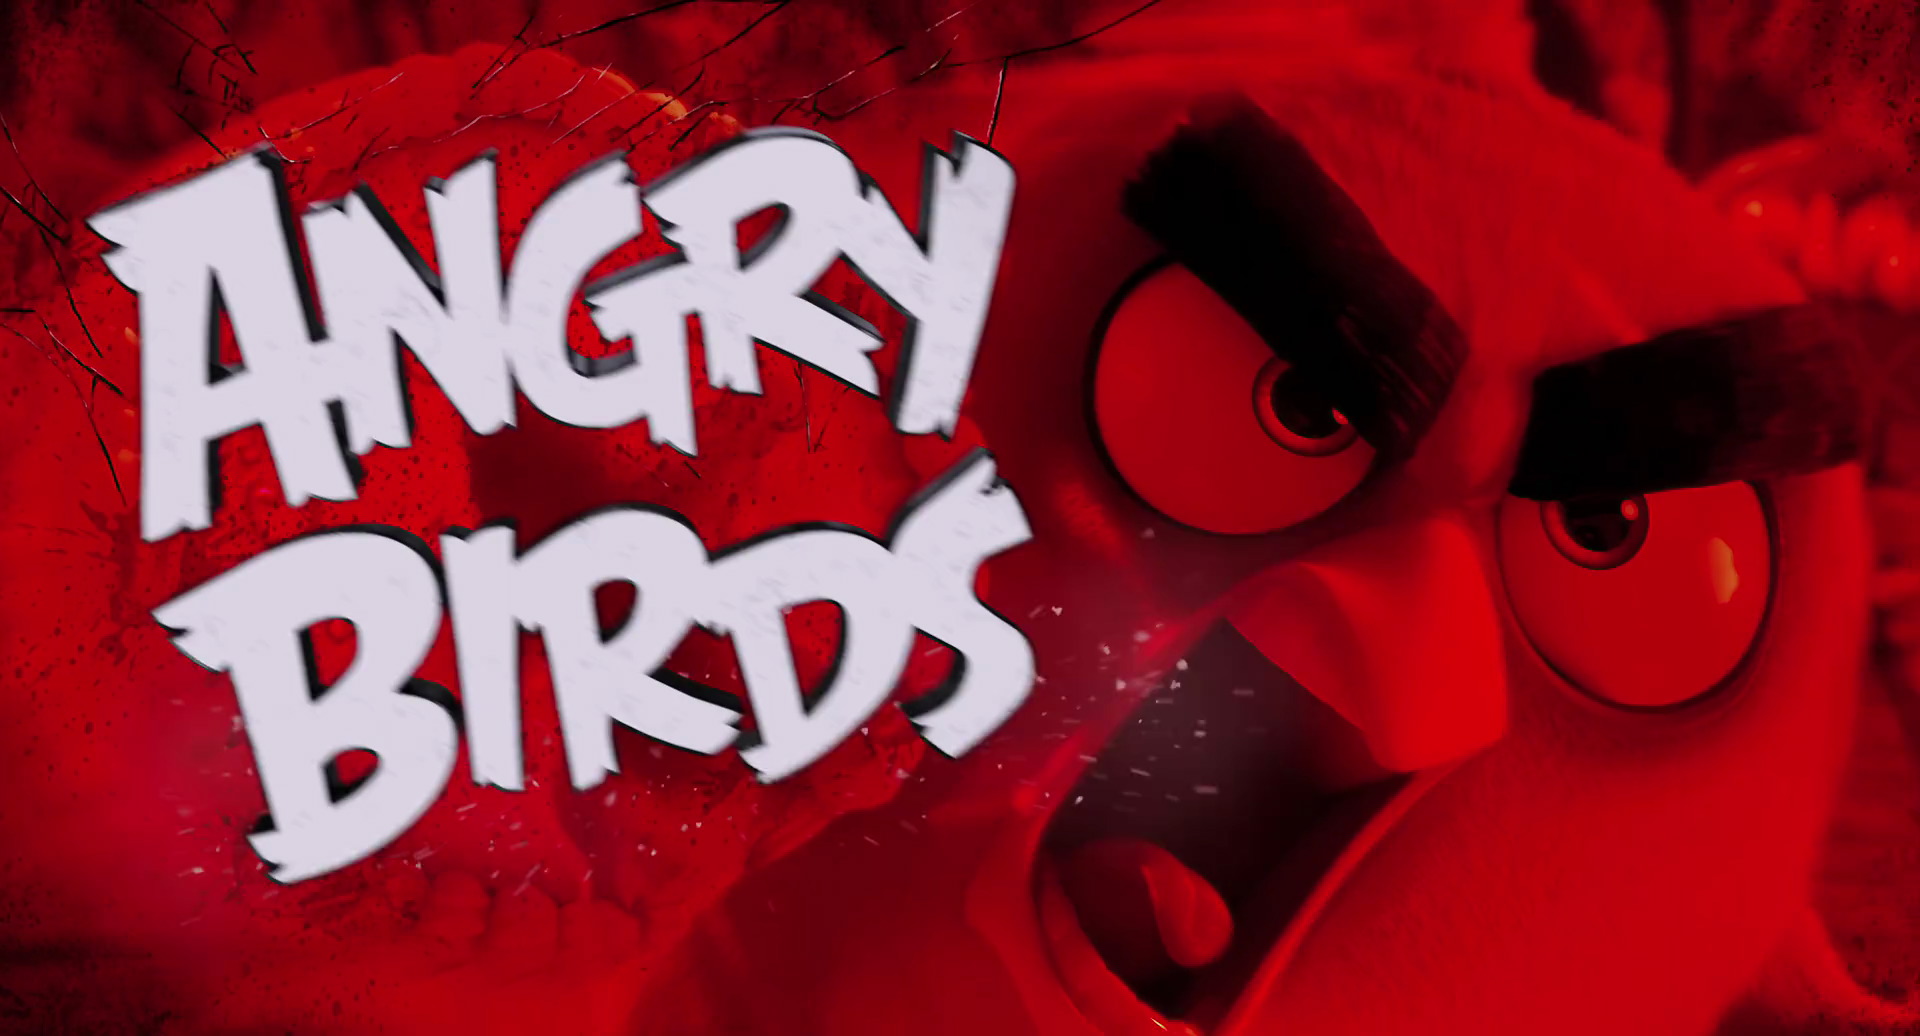 angry birds seasons the movie